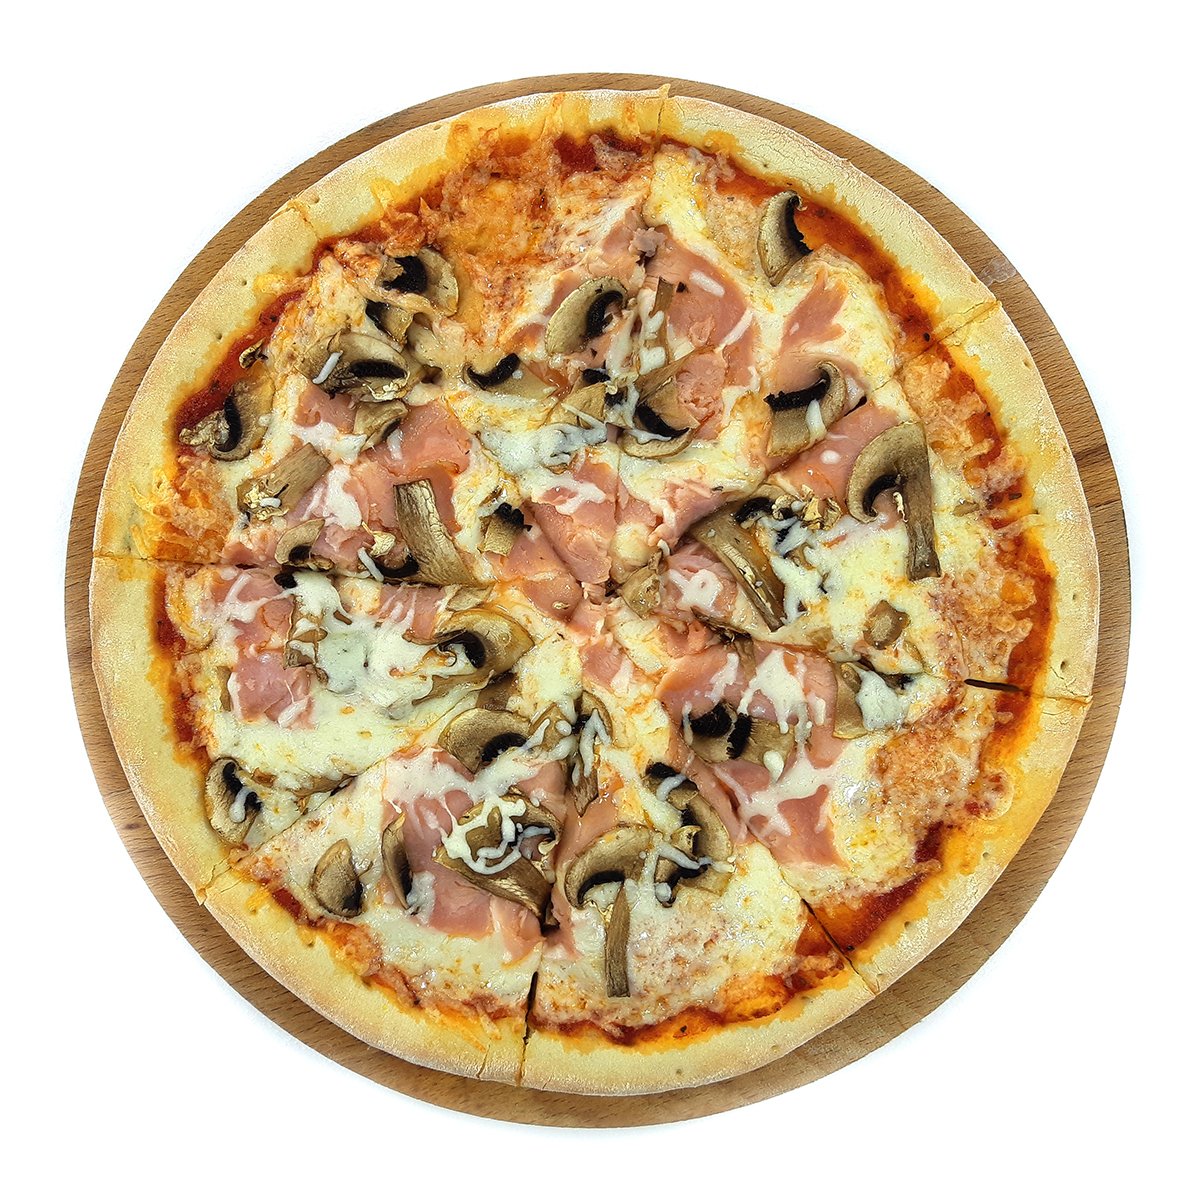 цезарь пицца с ветчиной и грибами замороженная отзыв фото 118